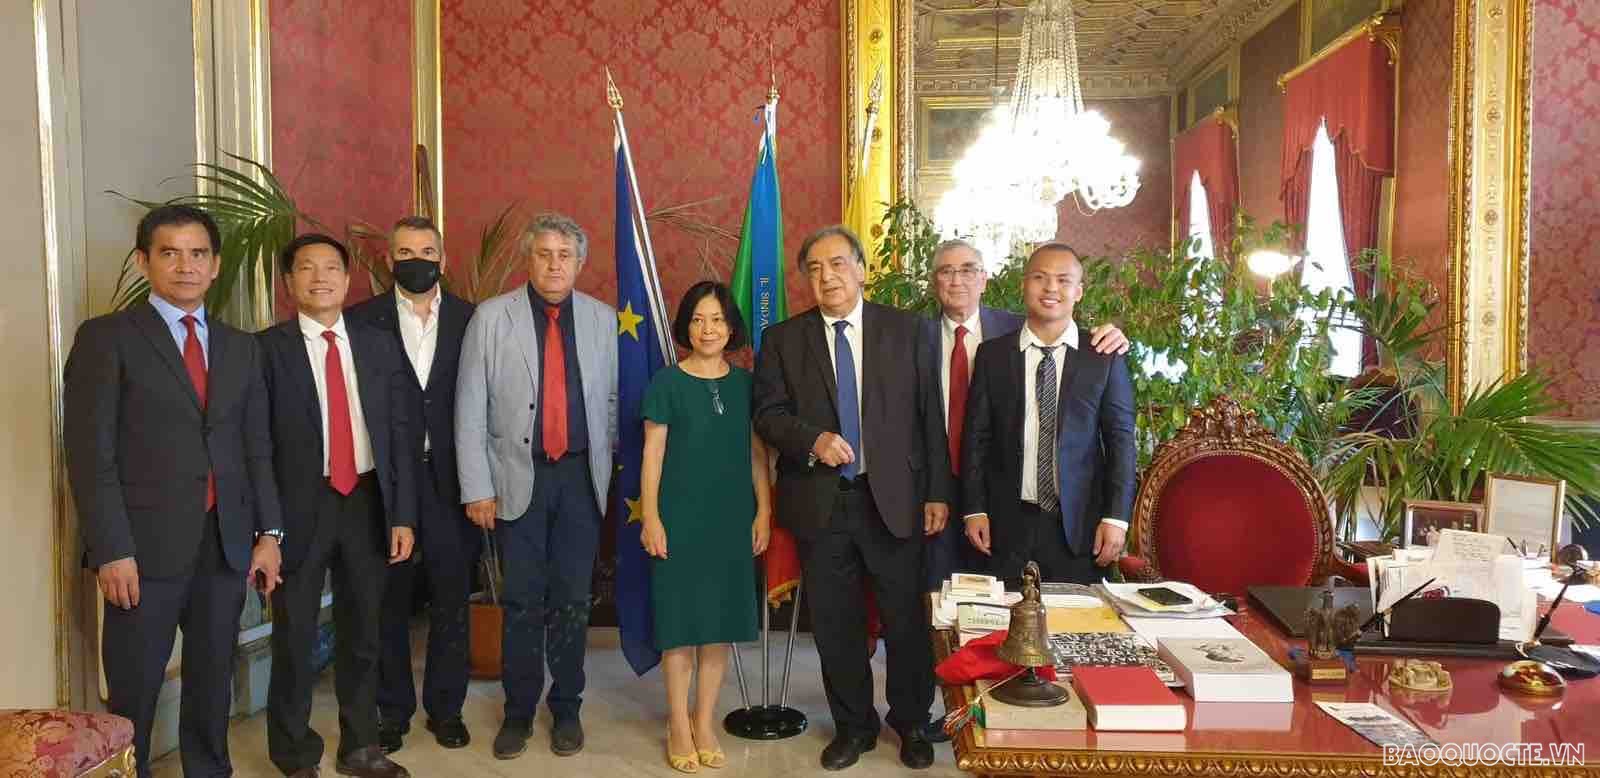 Đại sứ Nguyễn Thị Bích Huệ có chuyến công tác tại Sicilia